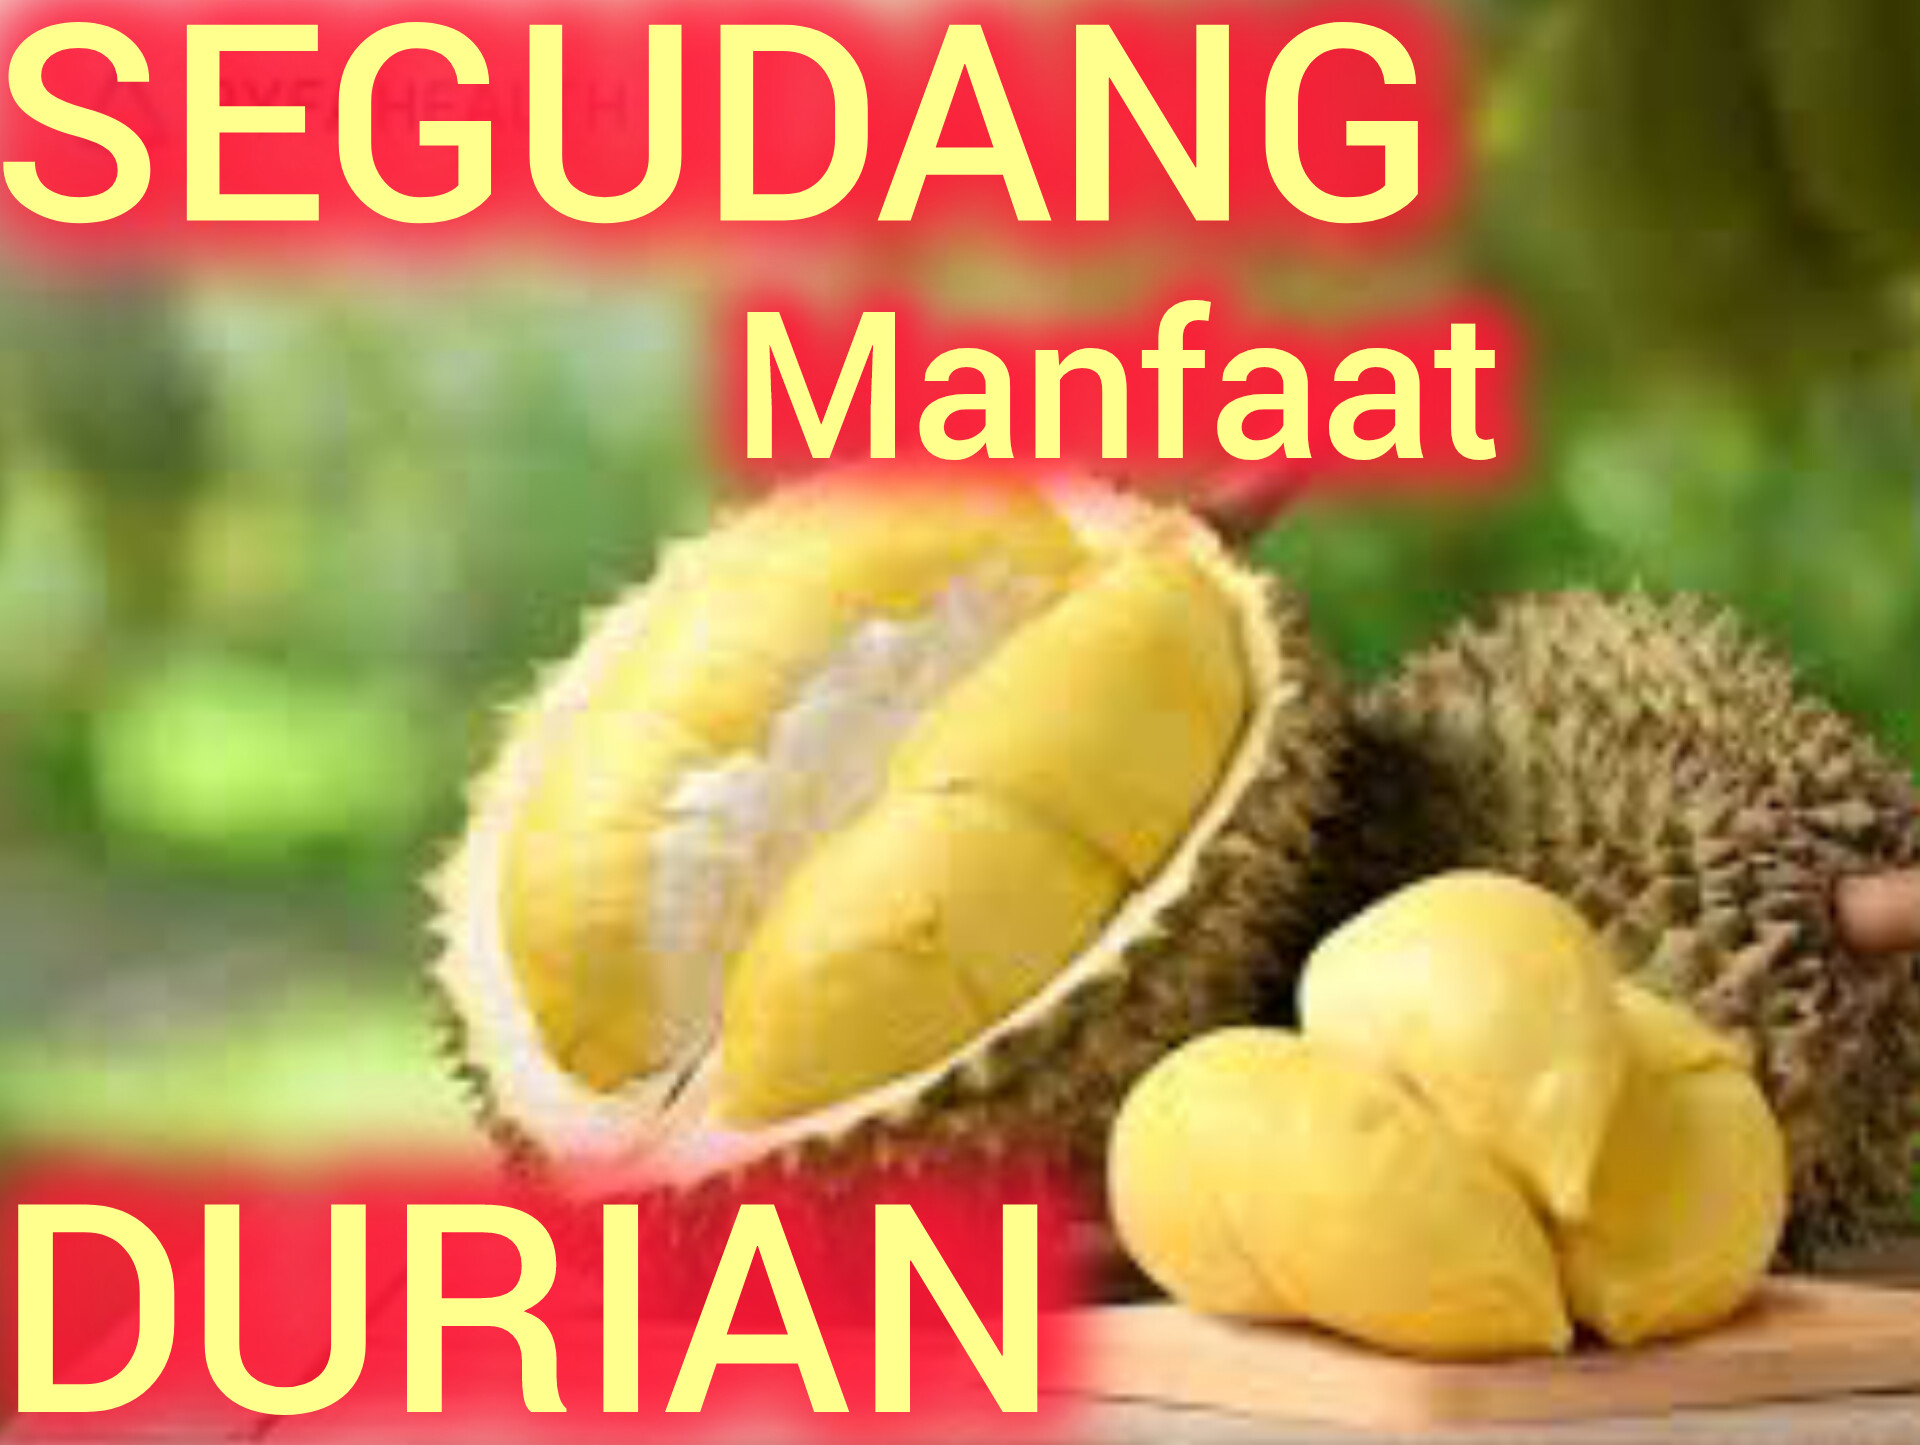 Baru Tahu, Ternyata Buah Durian Memiliki Segudang Manfaat Untuk Kesehatan Tubuh Manusia, Bisa Awet Muda Juga